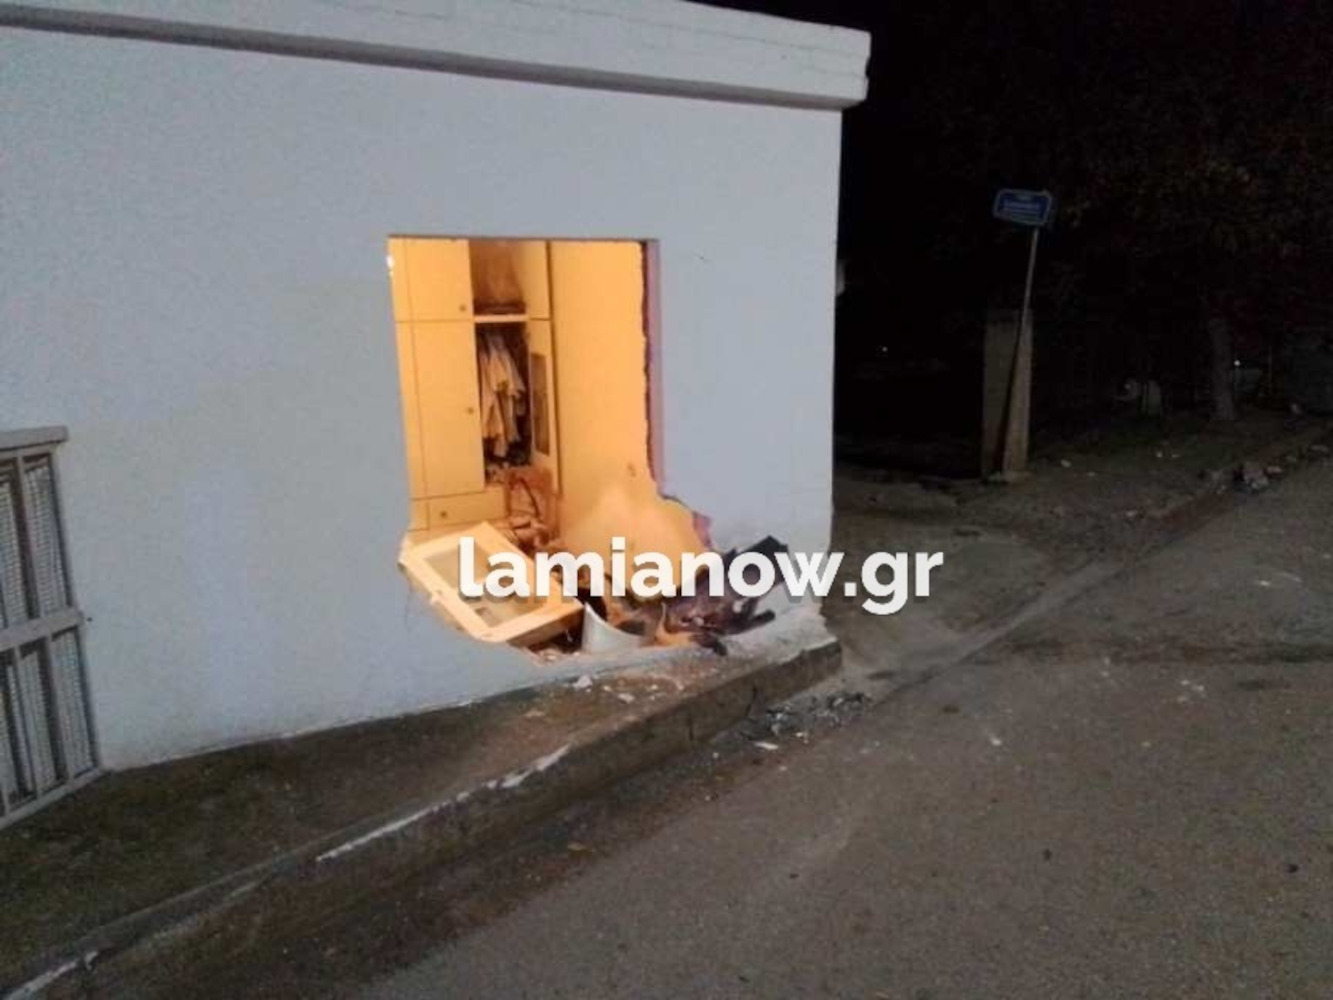 Τροχαίο: Κοιμόταν και ξαφνικά αυτοκίνητο γκρέμισε τον τοίχο της κρεβατοκάμαρας στη Λαμία